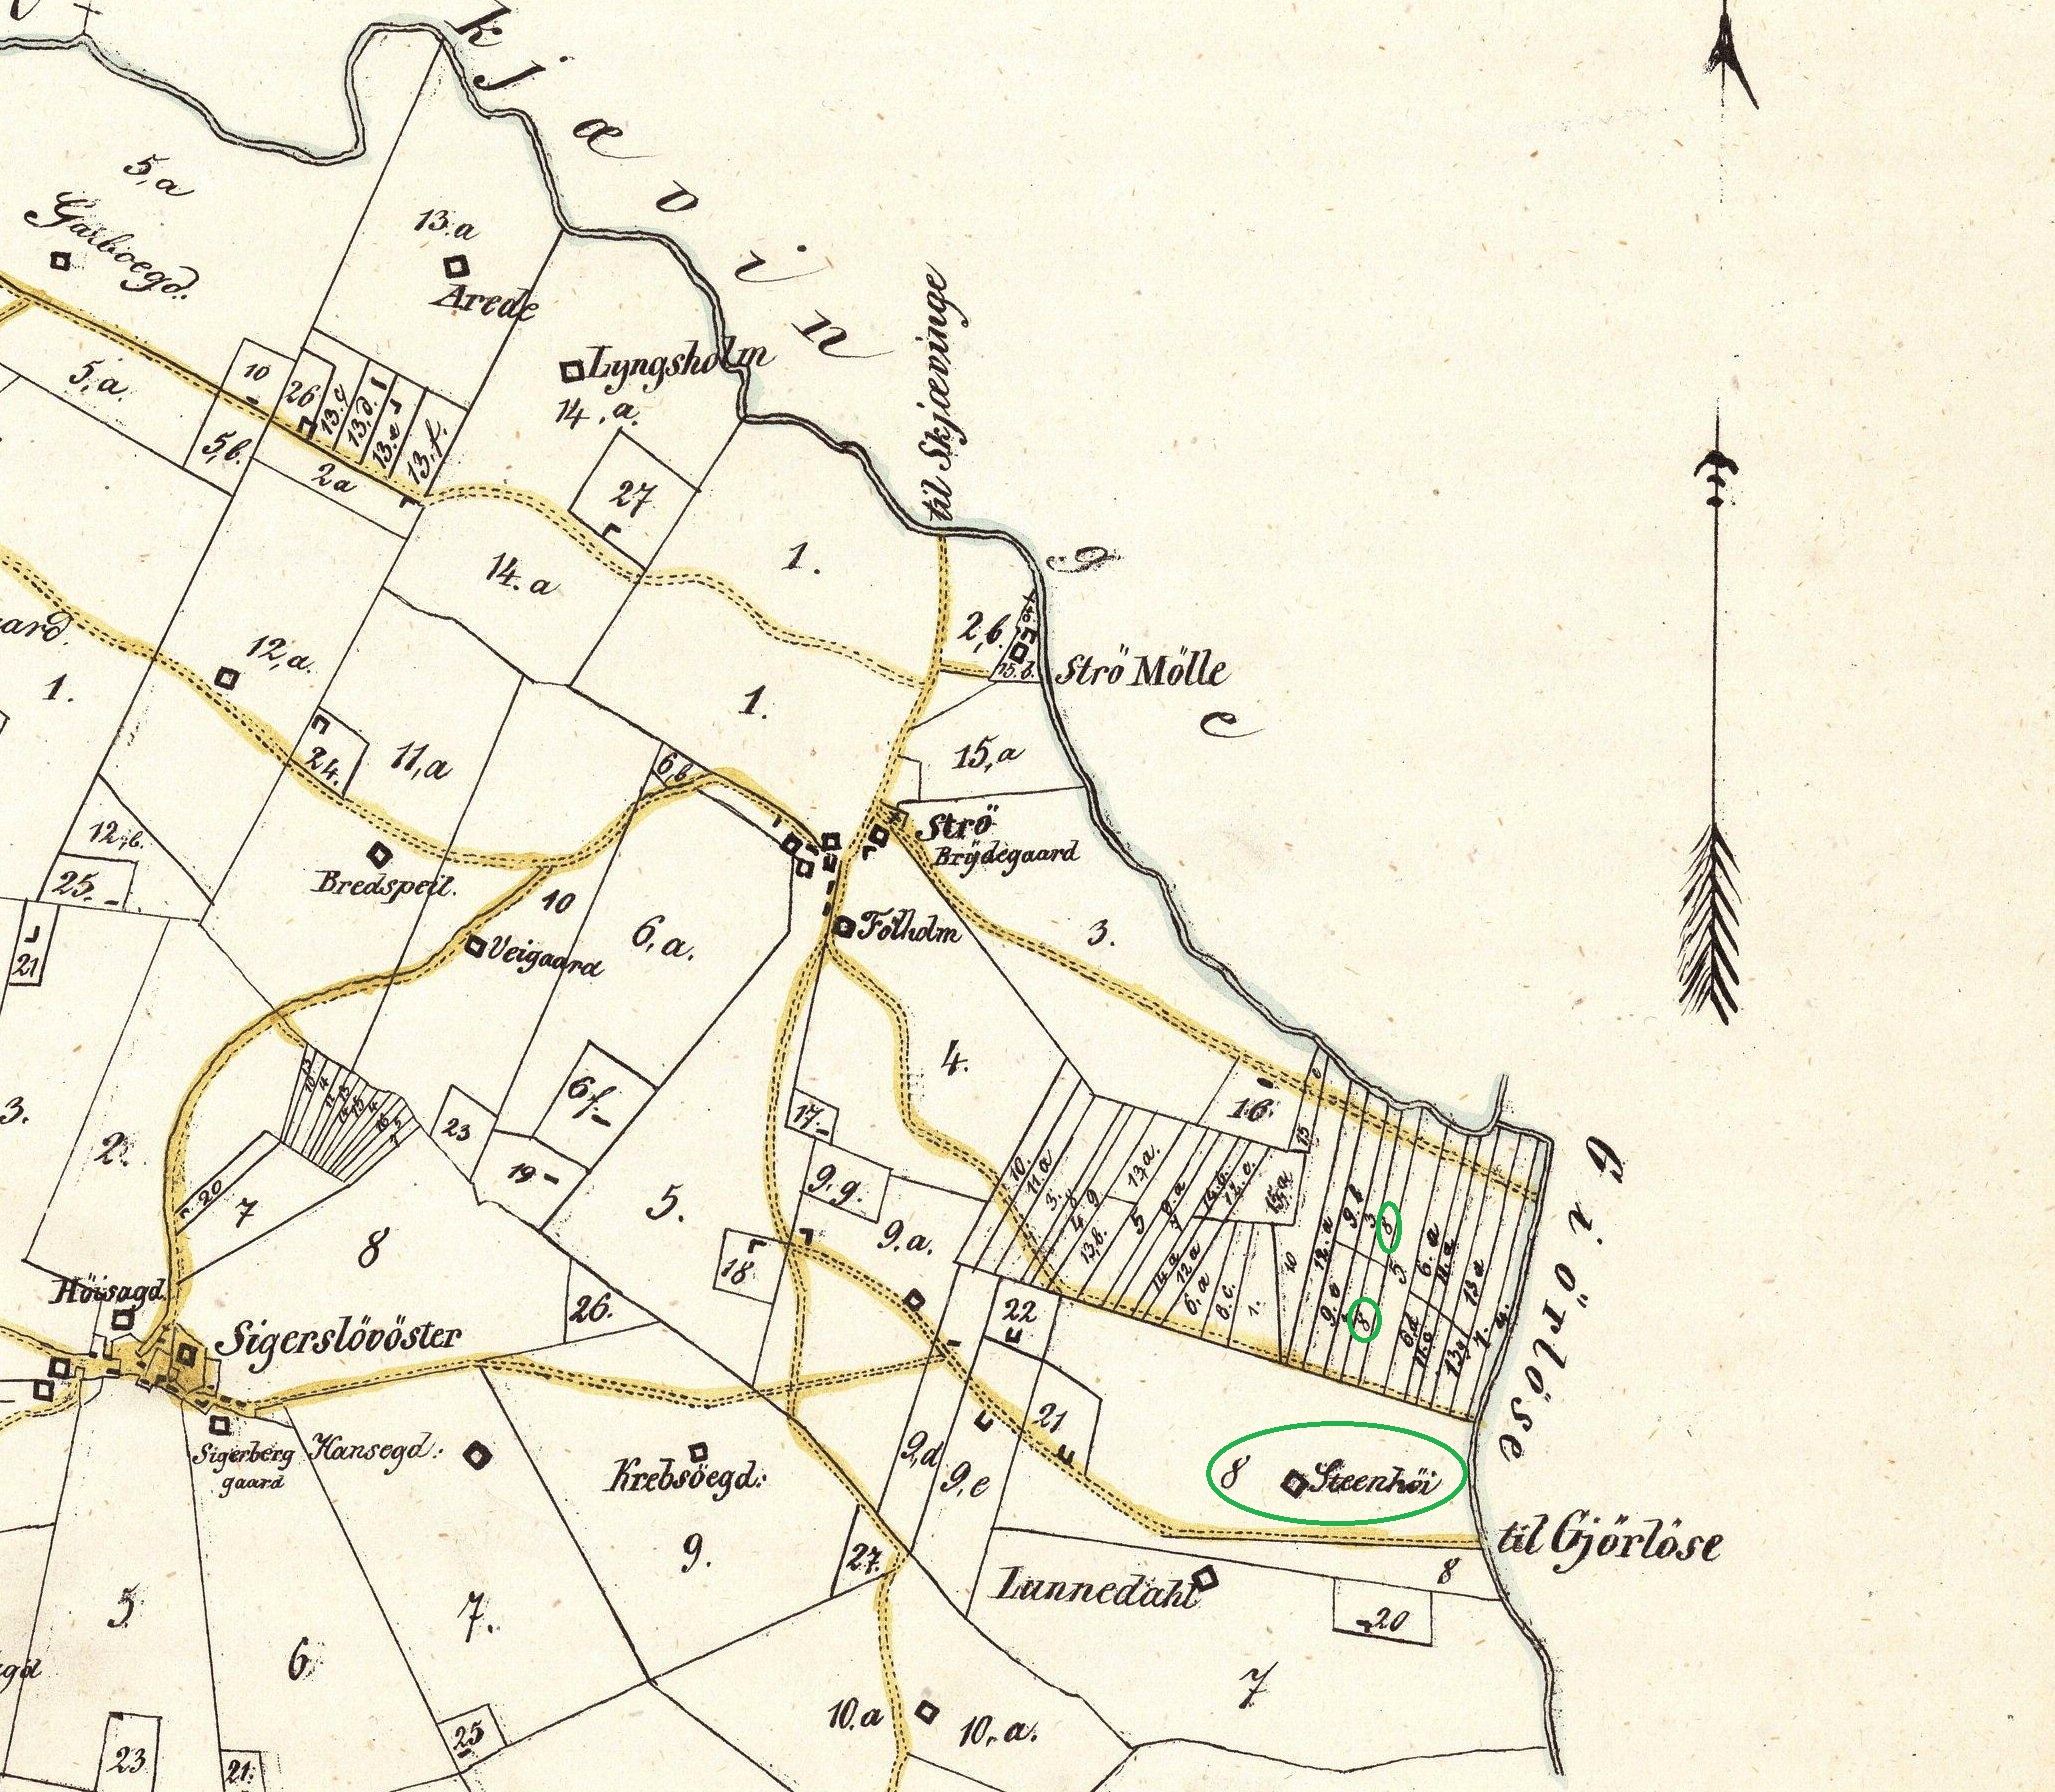 Stenhjs arealer 1850